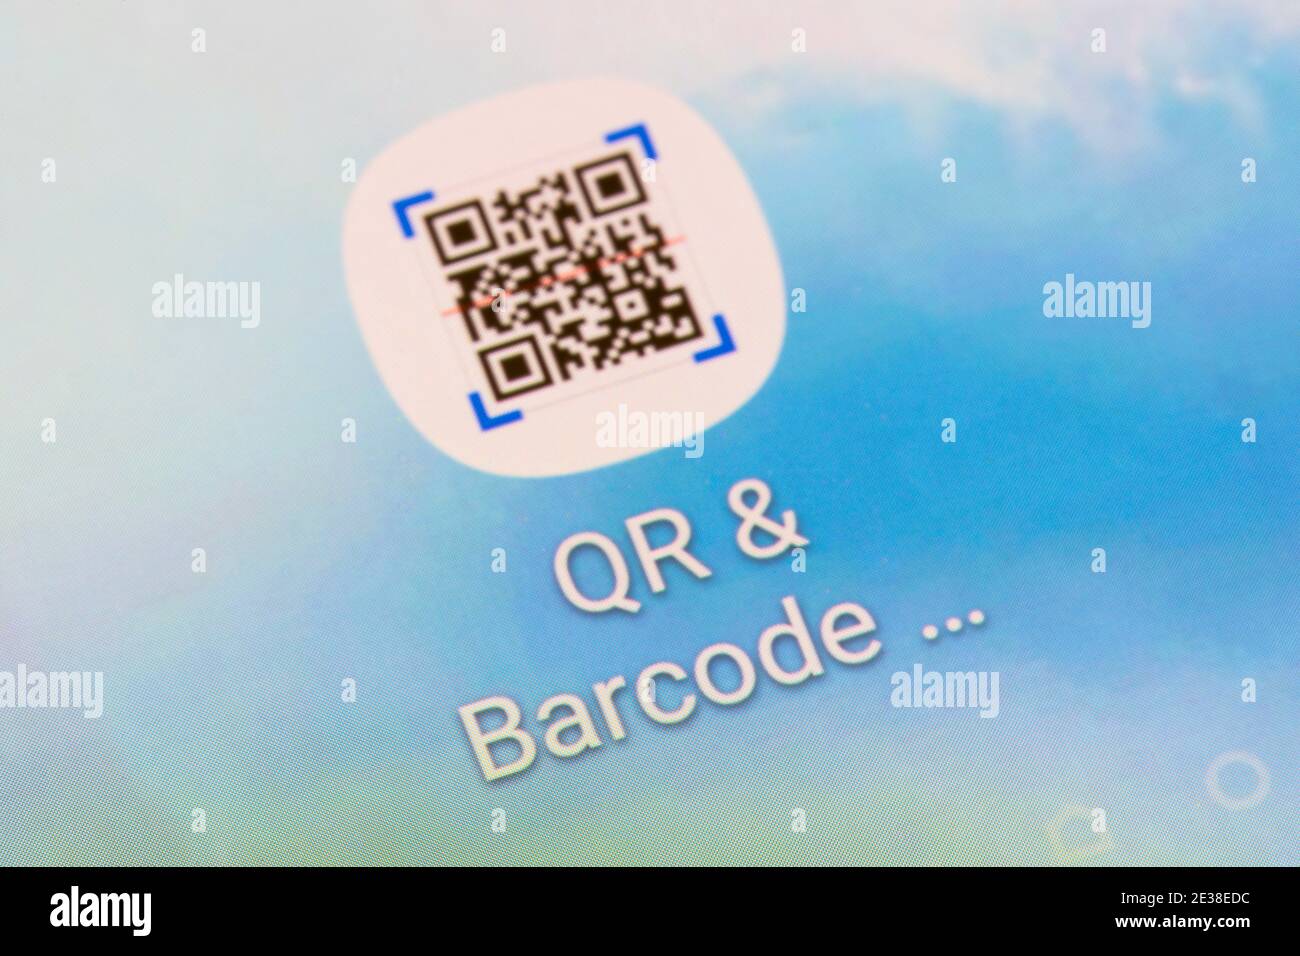 Gros plan de l'application QR & Barcode, pour la lecture de codes-barres ou de codes-barres graphiques 2D, sur un écran de smartphone Banque D'Images